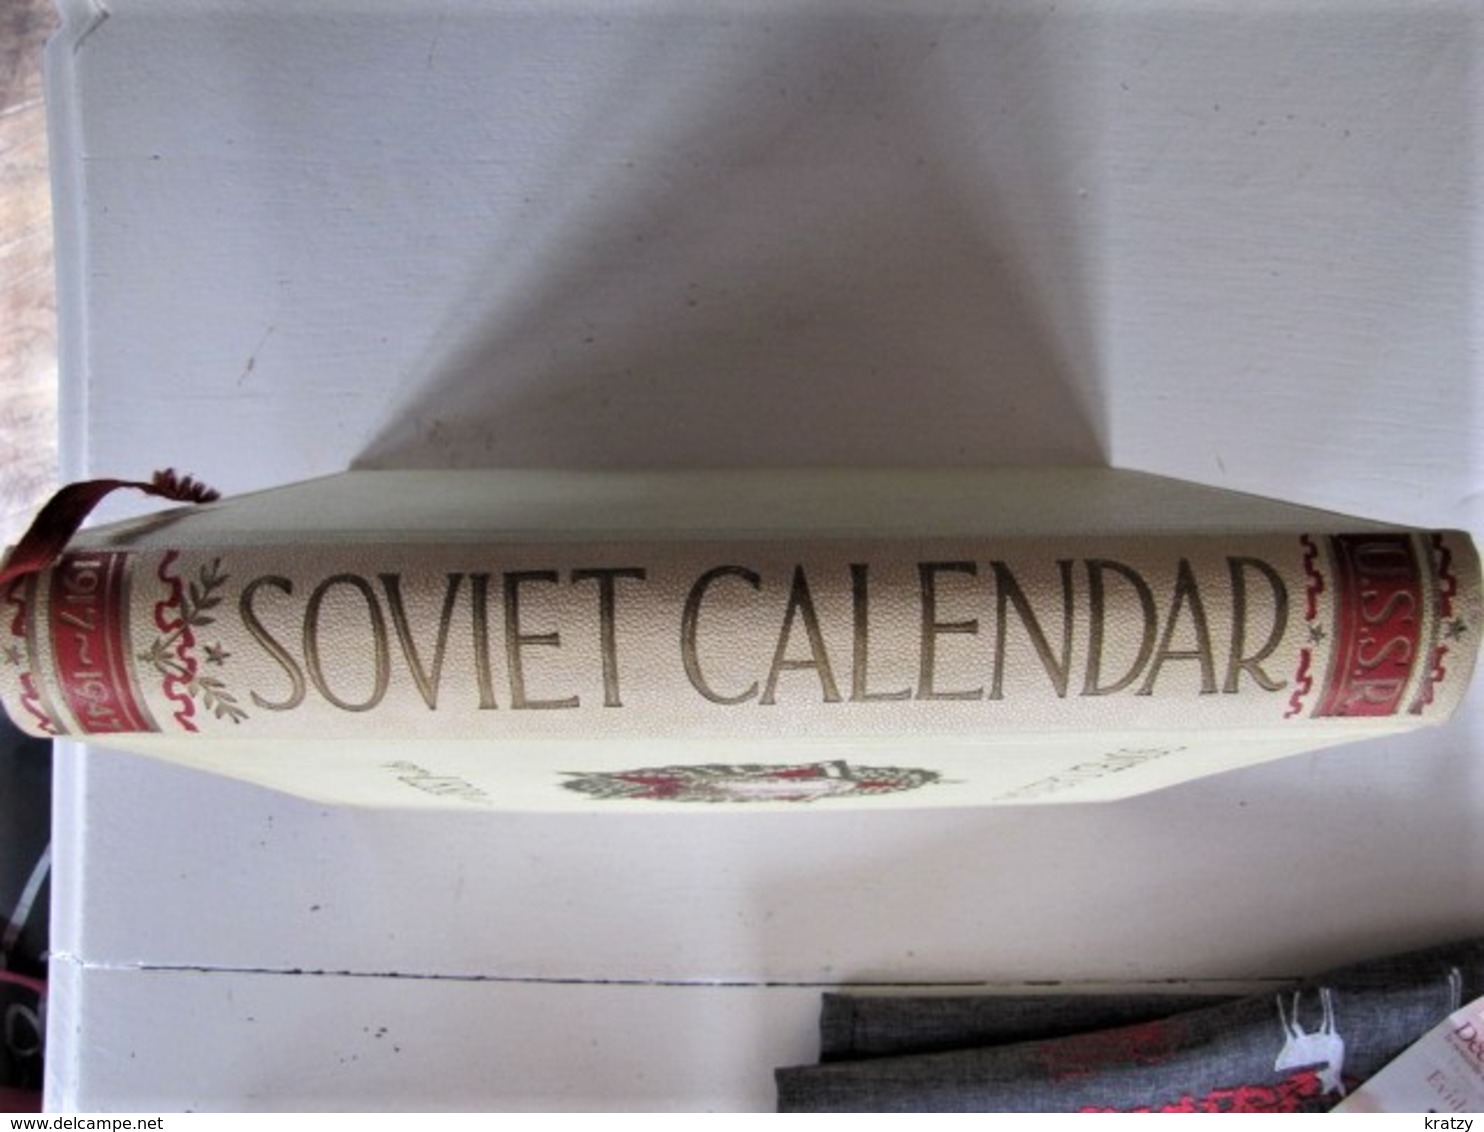 SOVIET CALENDAR - 1917 * U.S.S.R.* 1947 - 1900-1949